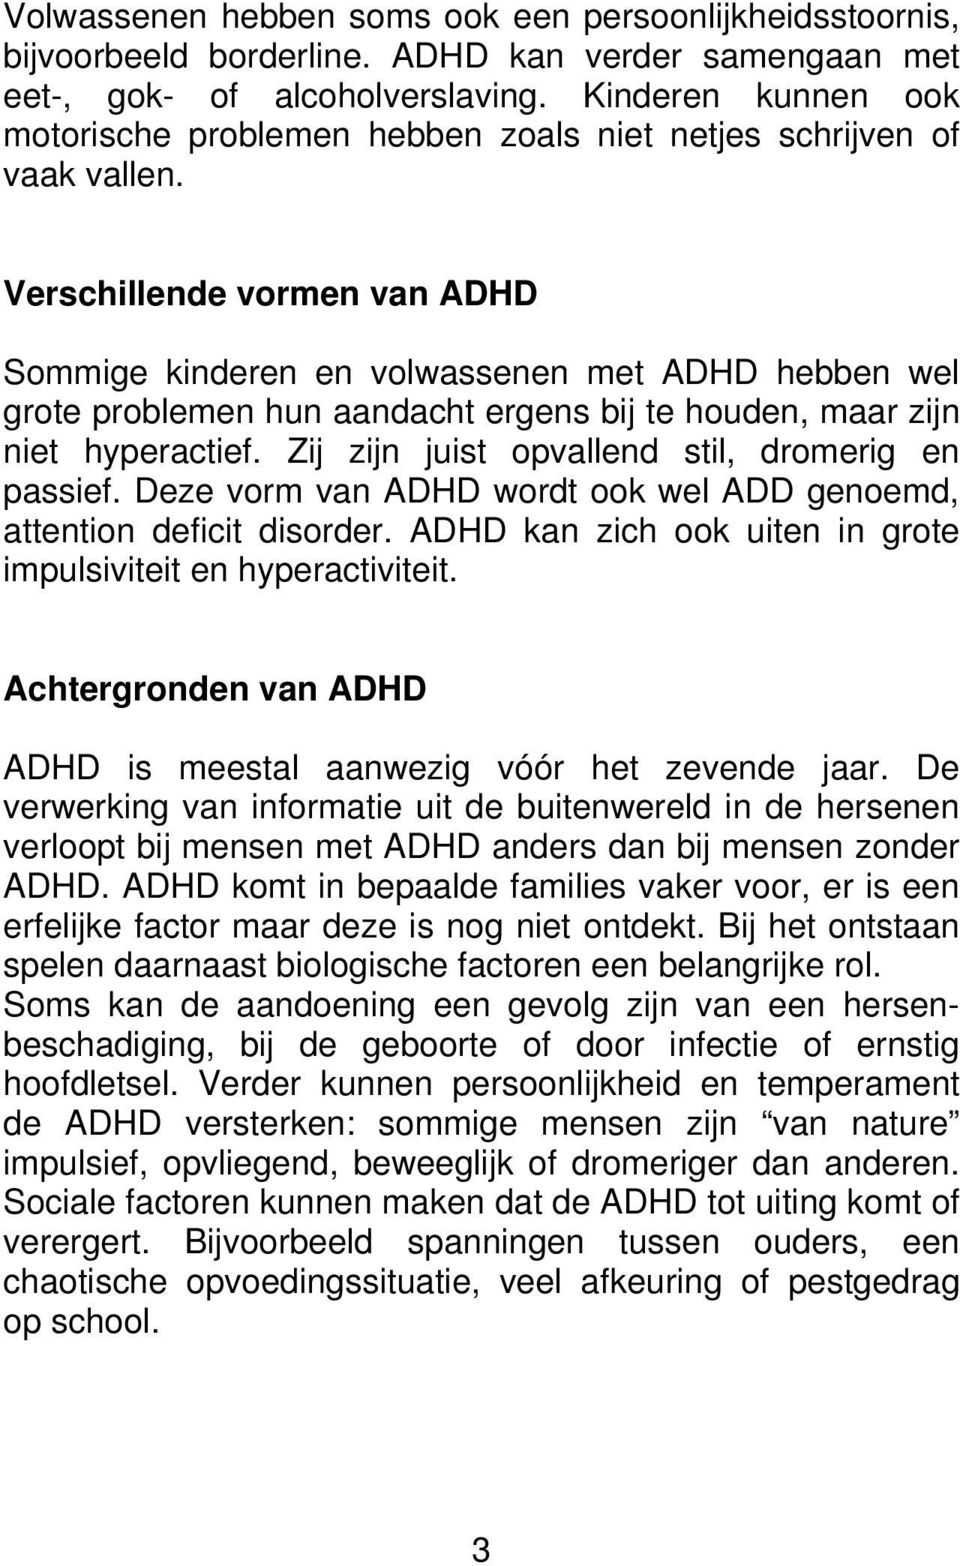 Verschillende vormen van ADHD Sommige kinderen en volwassenen met ADHD hebben wel grote problemen hun aandacht ergens bij te houden, maar zijn niet hyperactief.